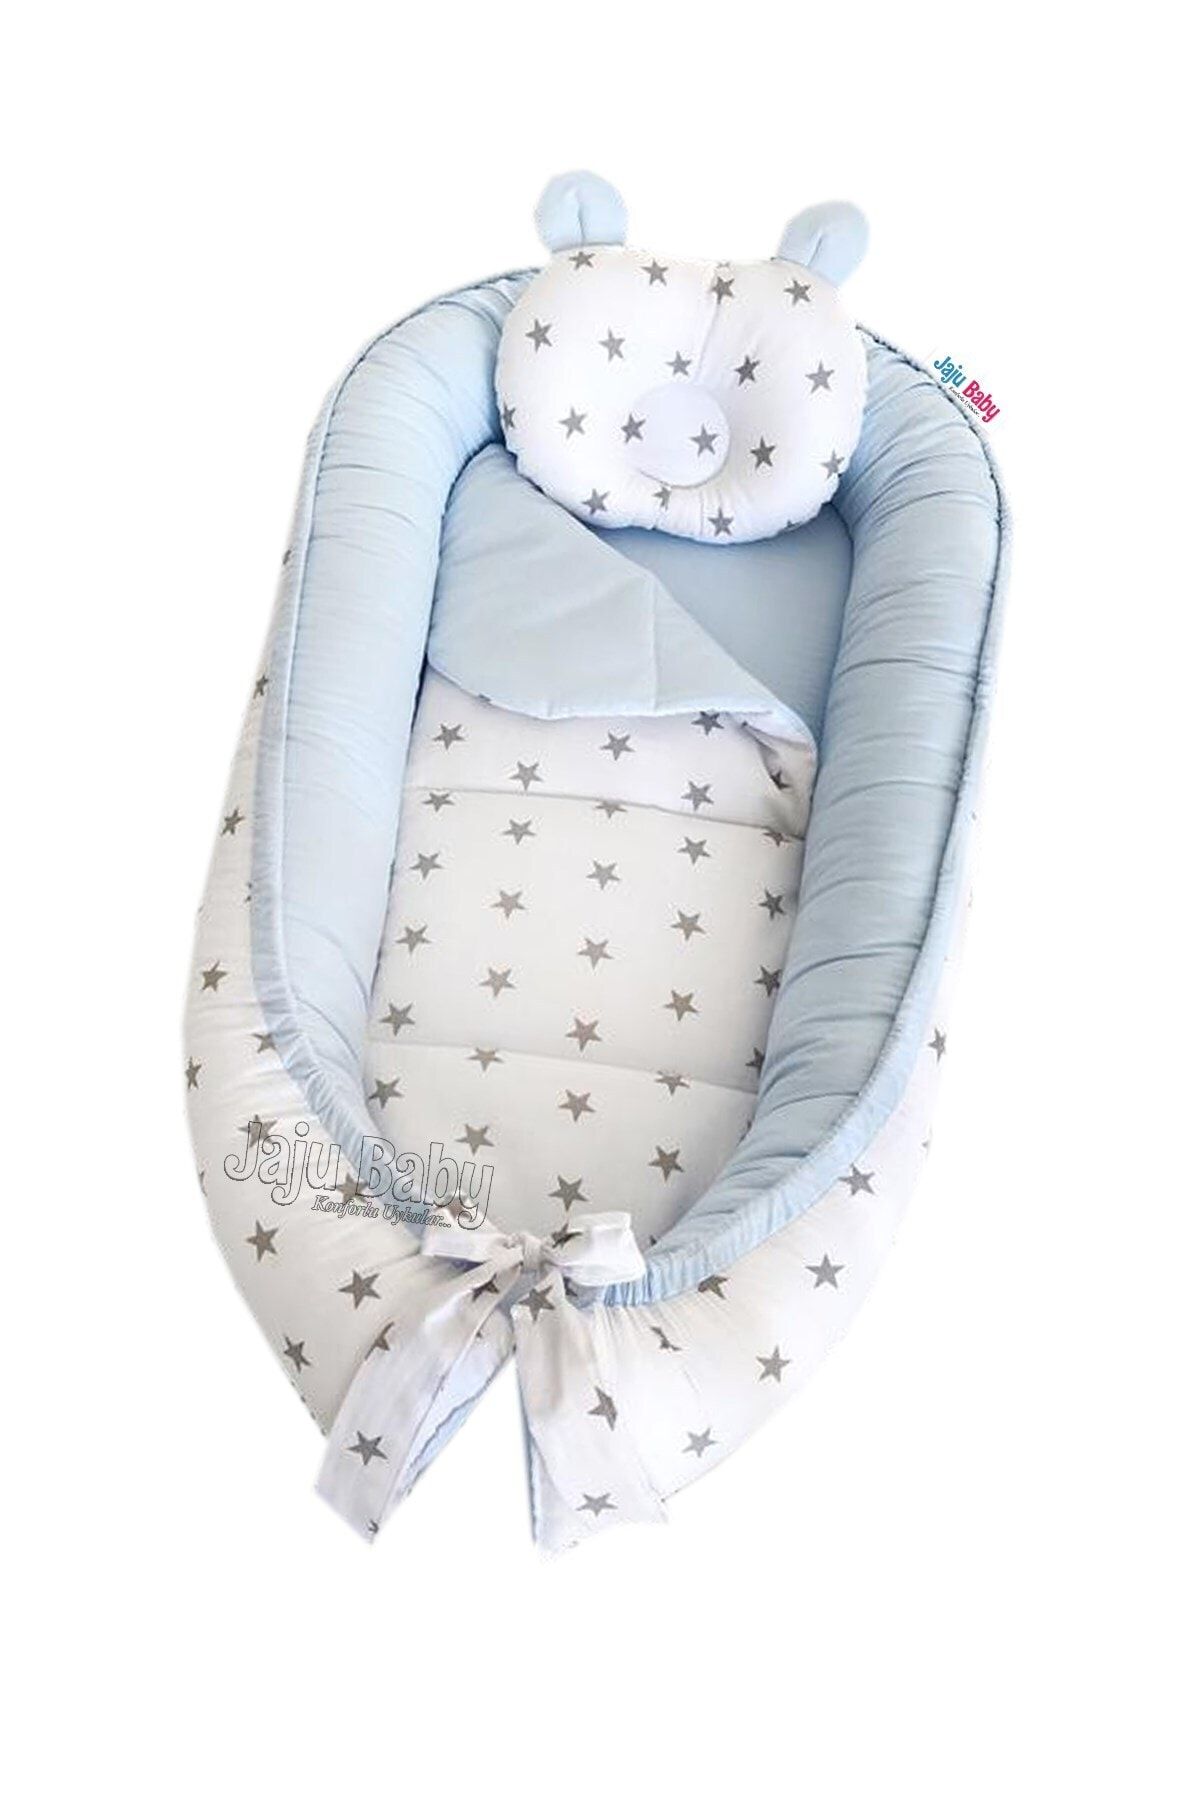 Jaju Baby Nest Mavi-gri Yıldızlı Lüx Portatif Jaju-babynest Anne Yanı Bebek Yatağı